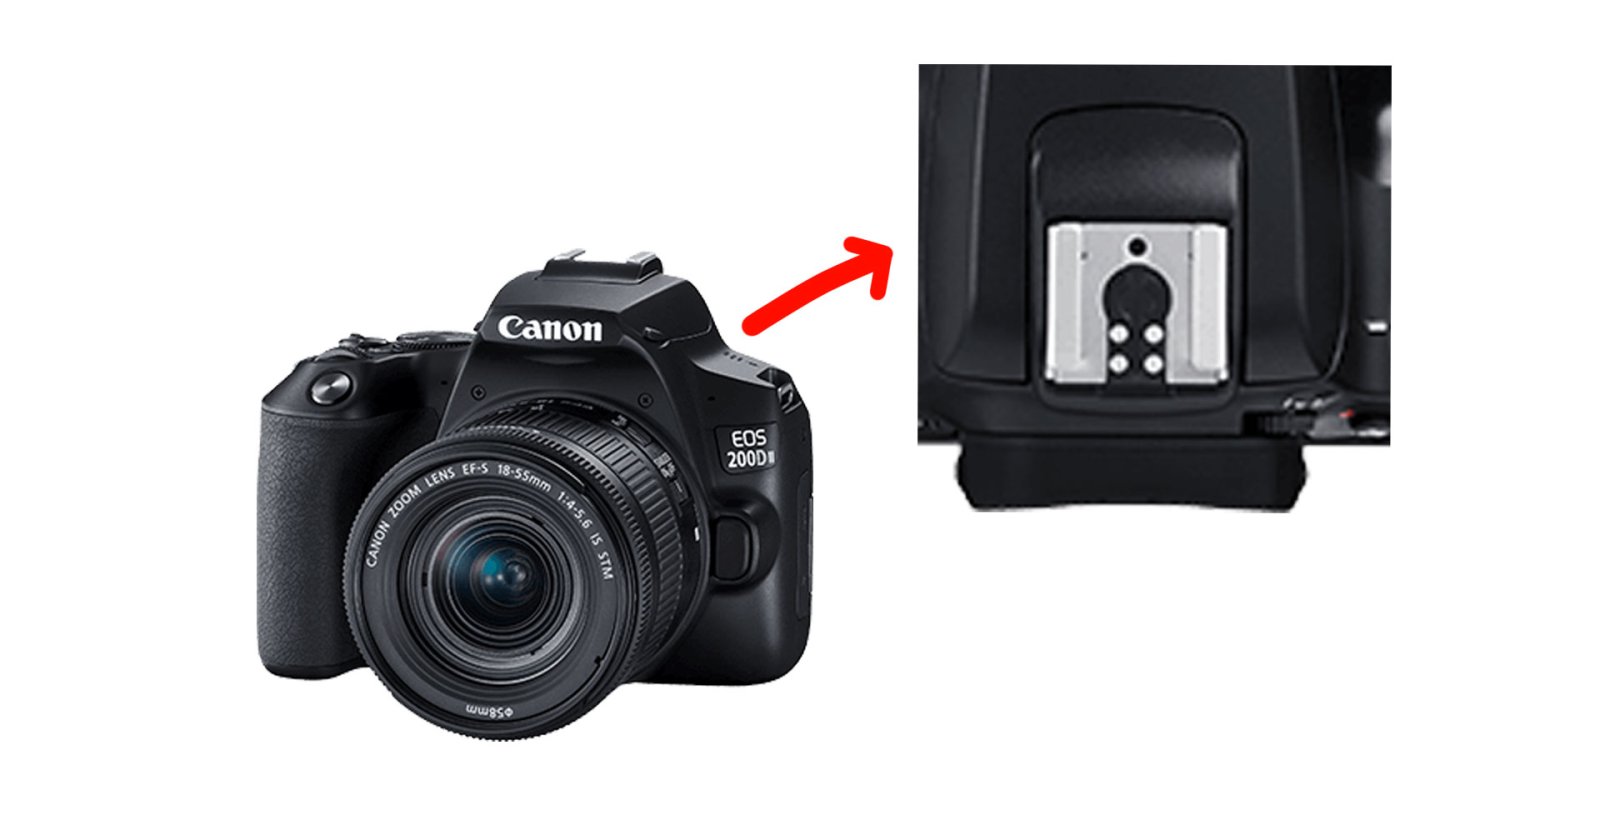 รู้หรือไม่!? Canon เคยถอด Universal Hot Shoe Pin ในกล้อง DSLR รุ่นเริ่มต้นออก ทำให้ใช้แฟลช Manual ไม่ได้